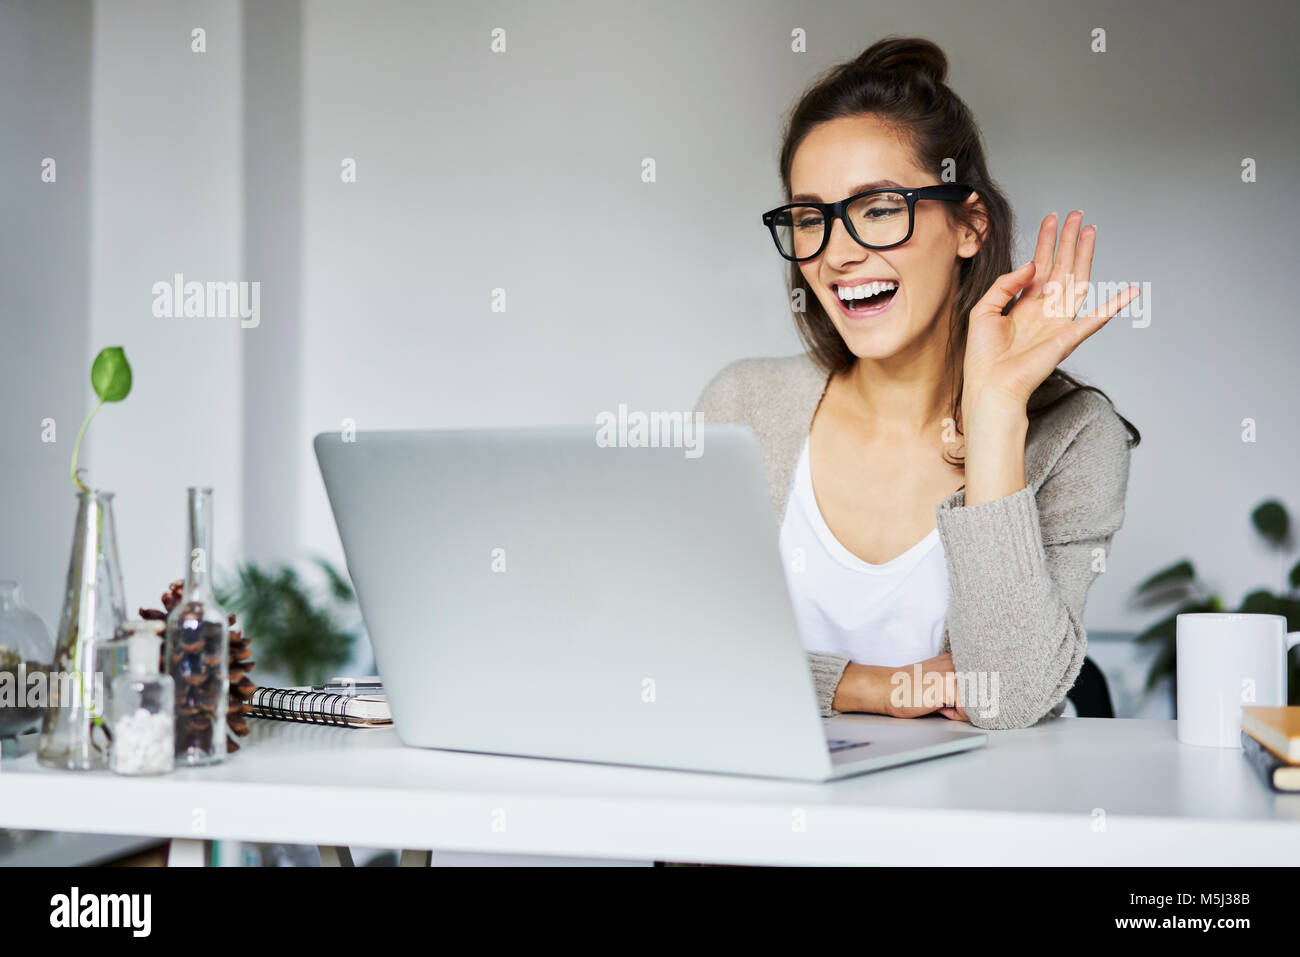 Jeune femme en riant pendant une conversation vidéo à 24 Banque D'Images